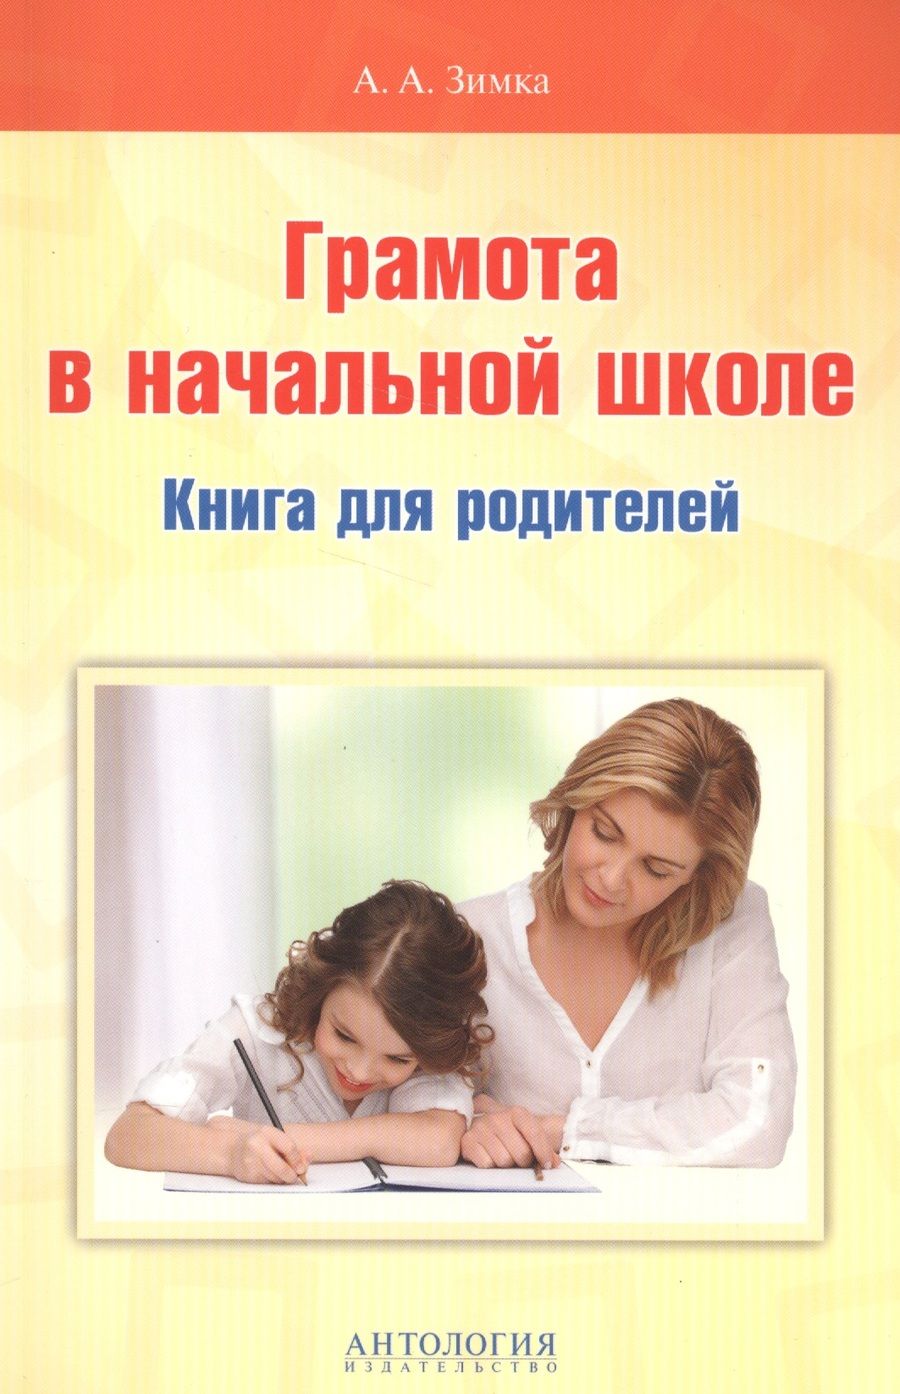 Обложка книги "Анна Зимка: Грамота в начальной школе. Книга для родителей"